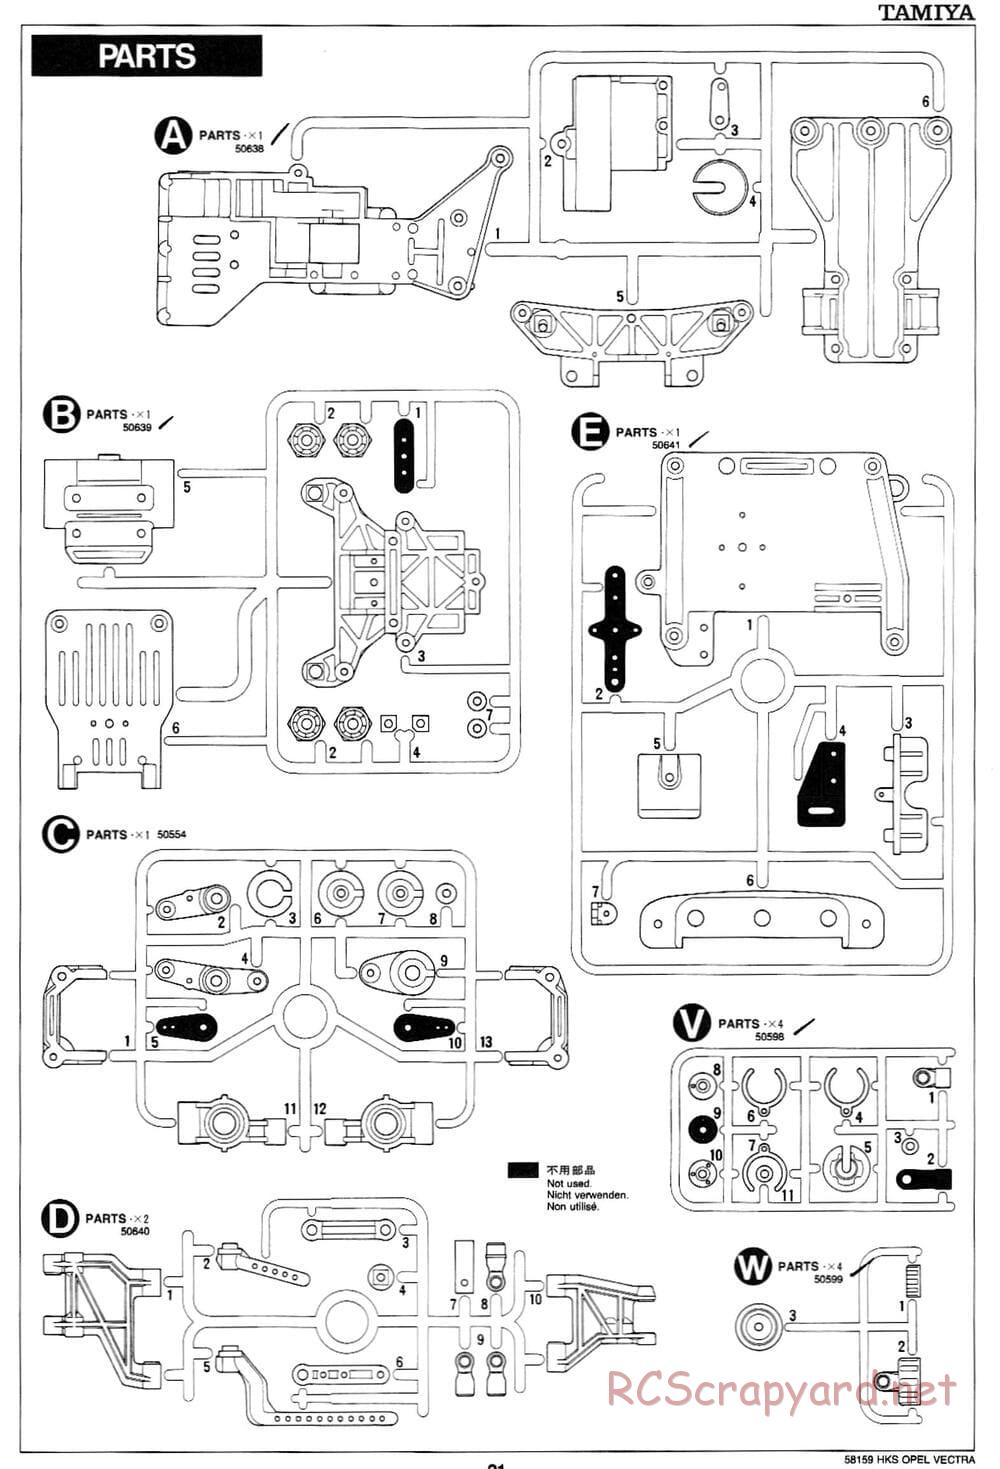 Tamiya - HKS Opel Vectra JTCC - FF-01 Chassis - Manual - Page 21